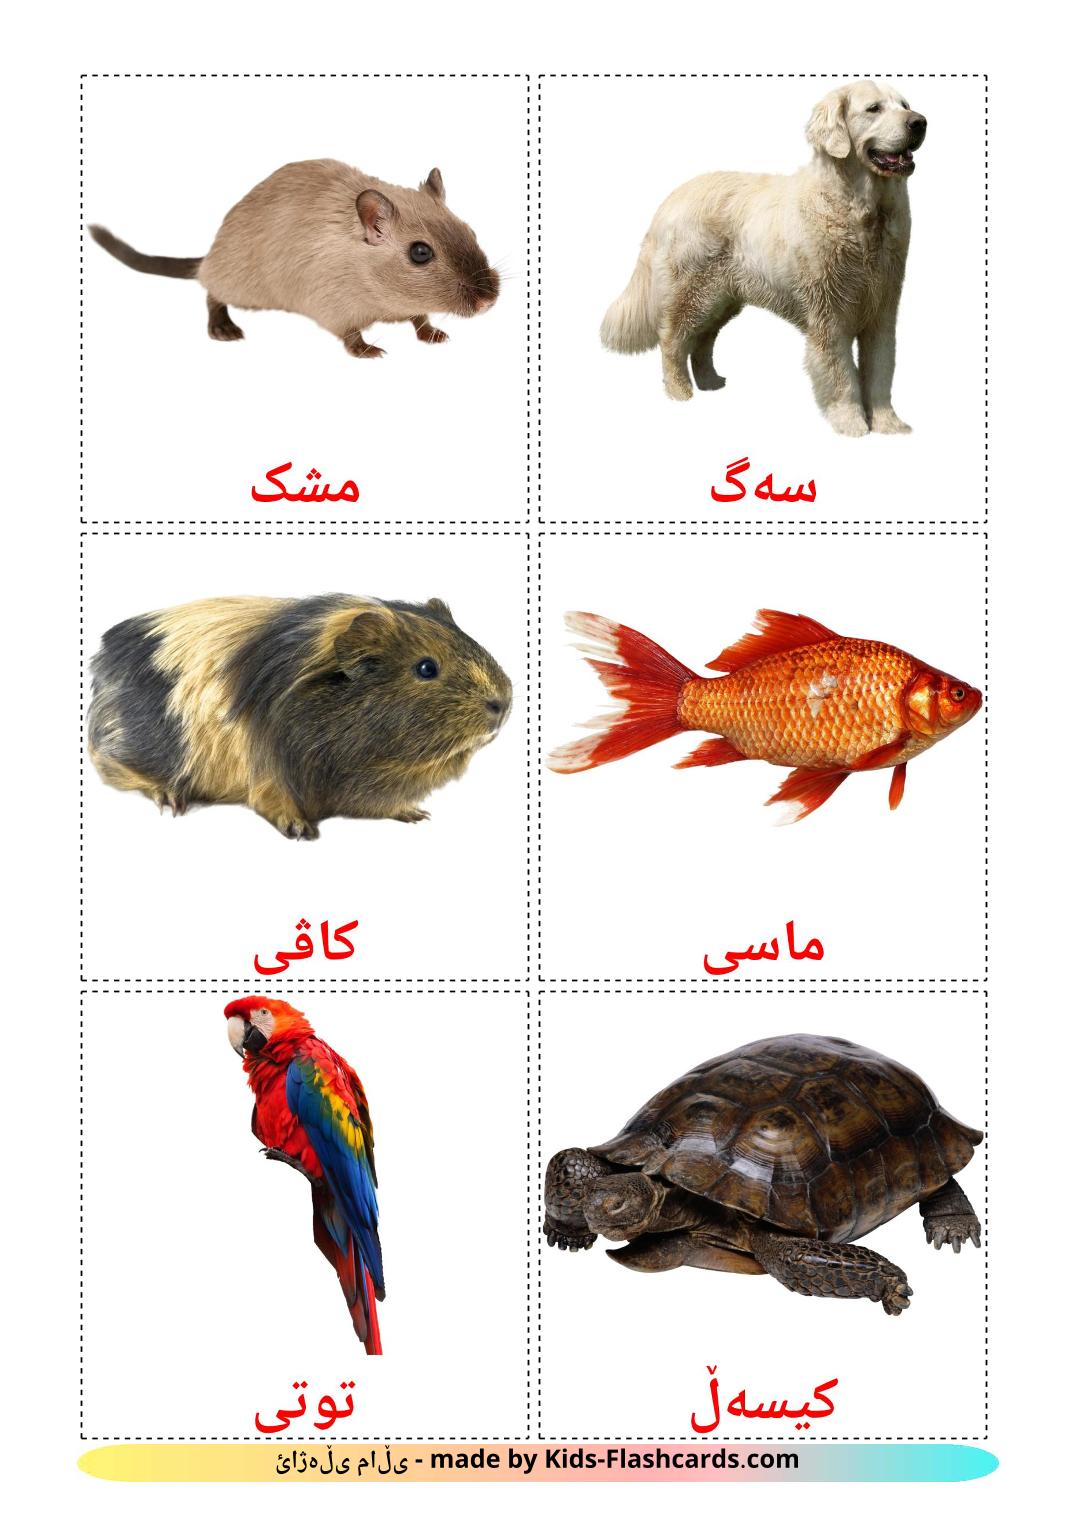 Domestic animals - 10 Free Printable kurdish(sorani) Flashcards 